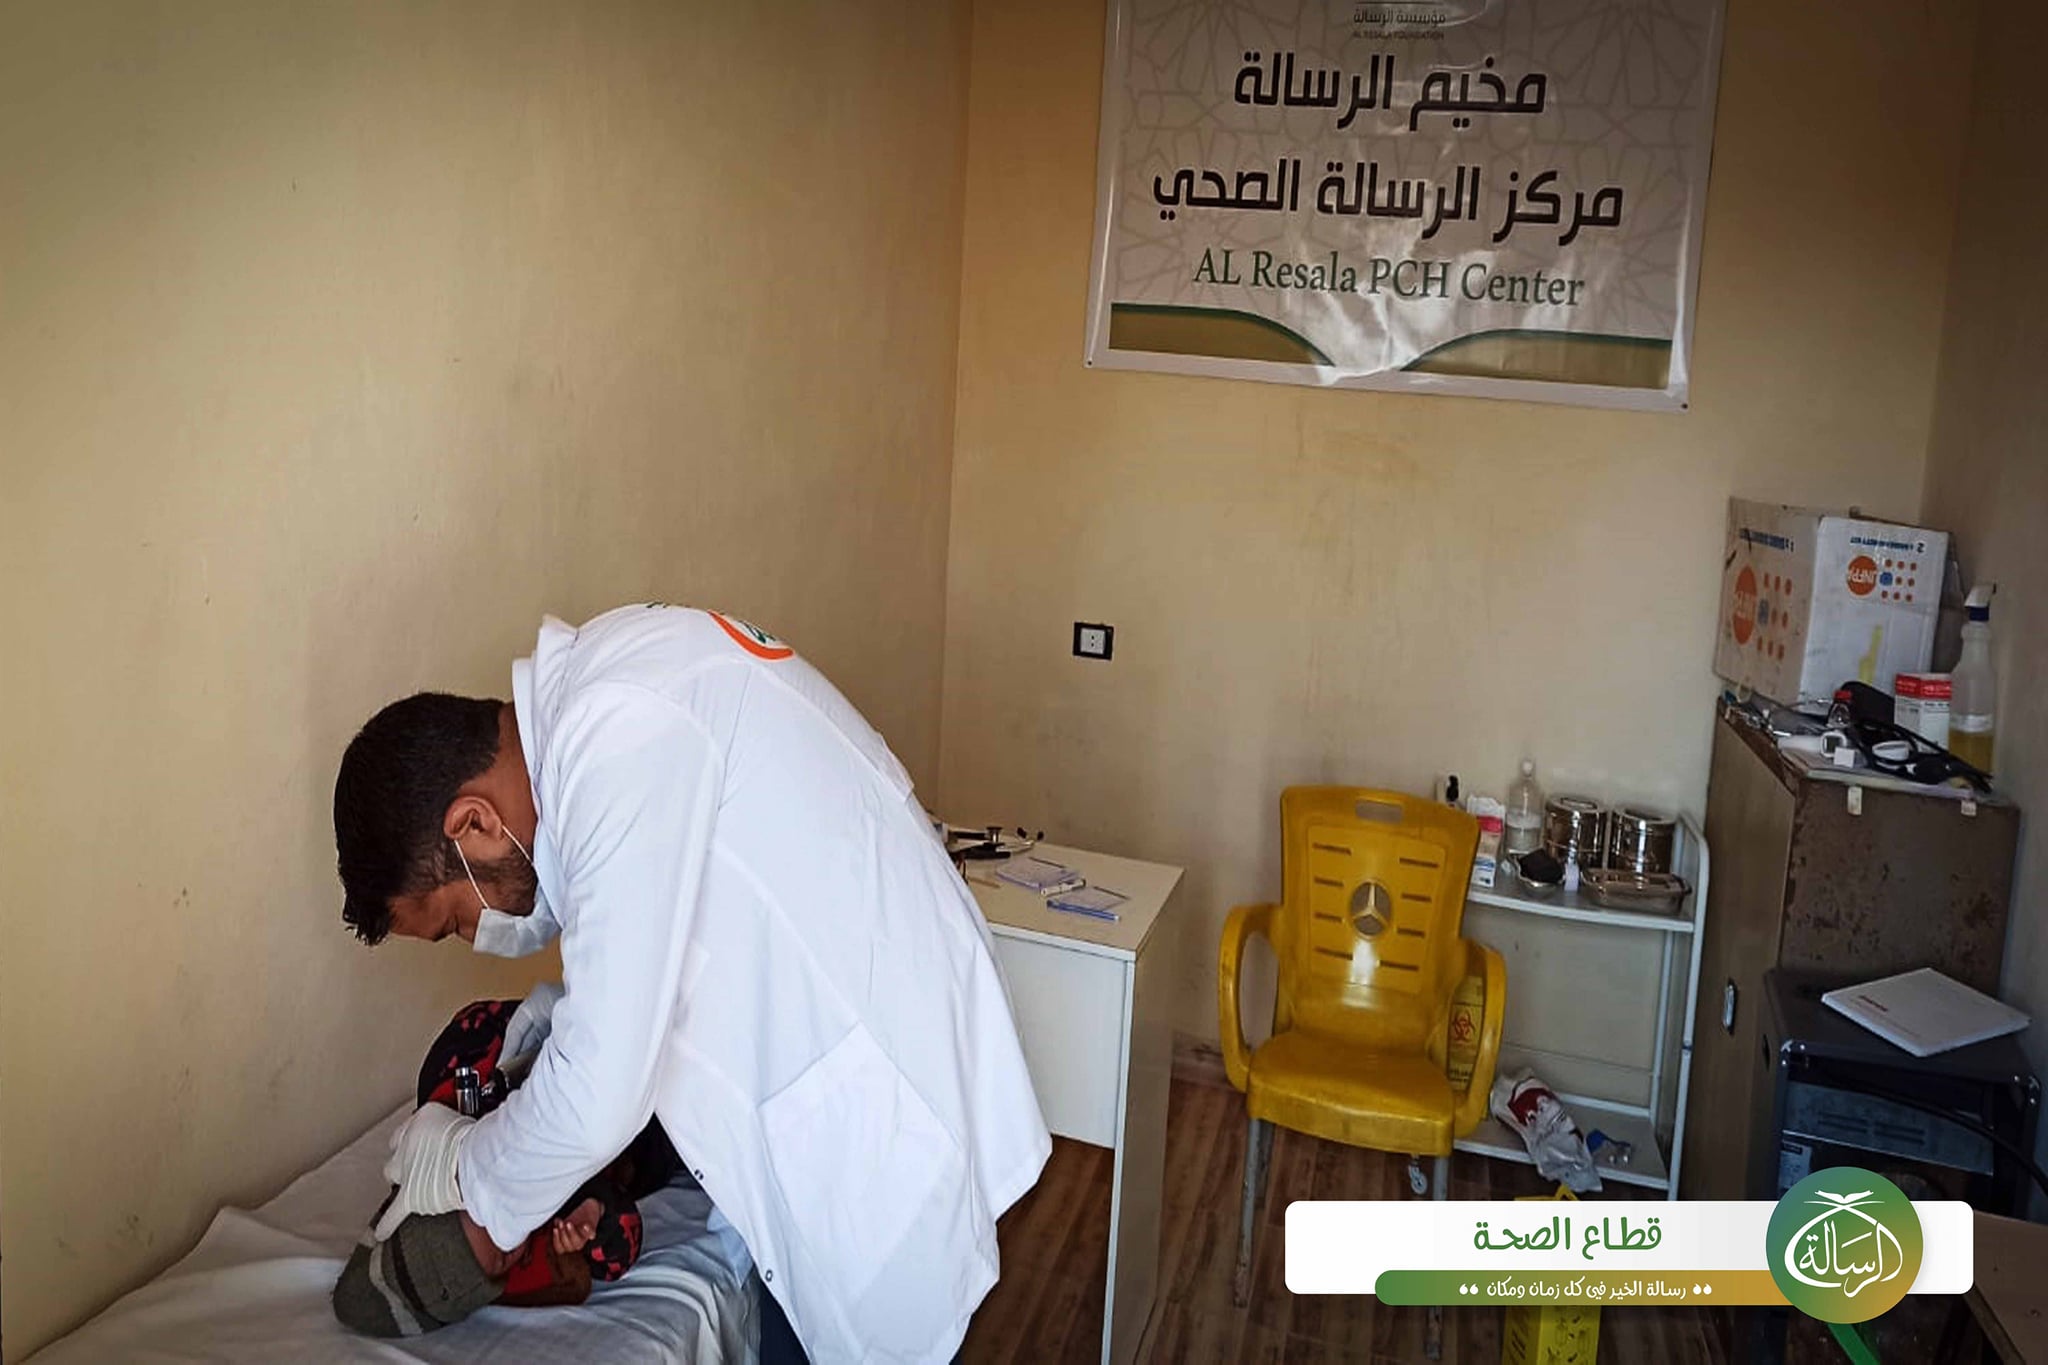 دعم وتعزيز الوصول إلى خدمات الرعاية الصحية الأولية والصحة النفسية في حلب وإدلب من خلال مراكز الرعاية الصحية الأولية في عفرين والرسالة وبلبل والأتارب وأرمناز